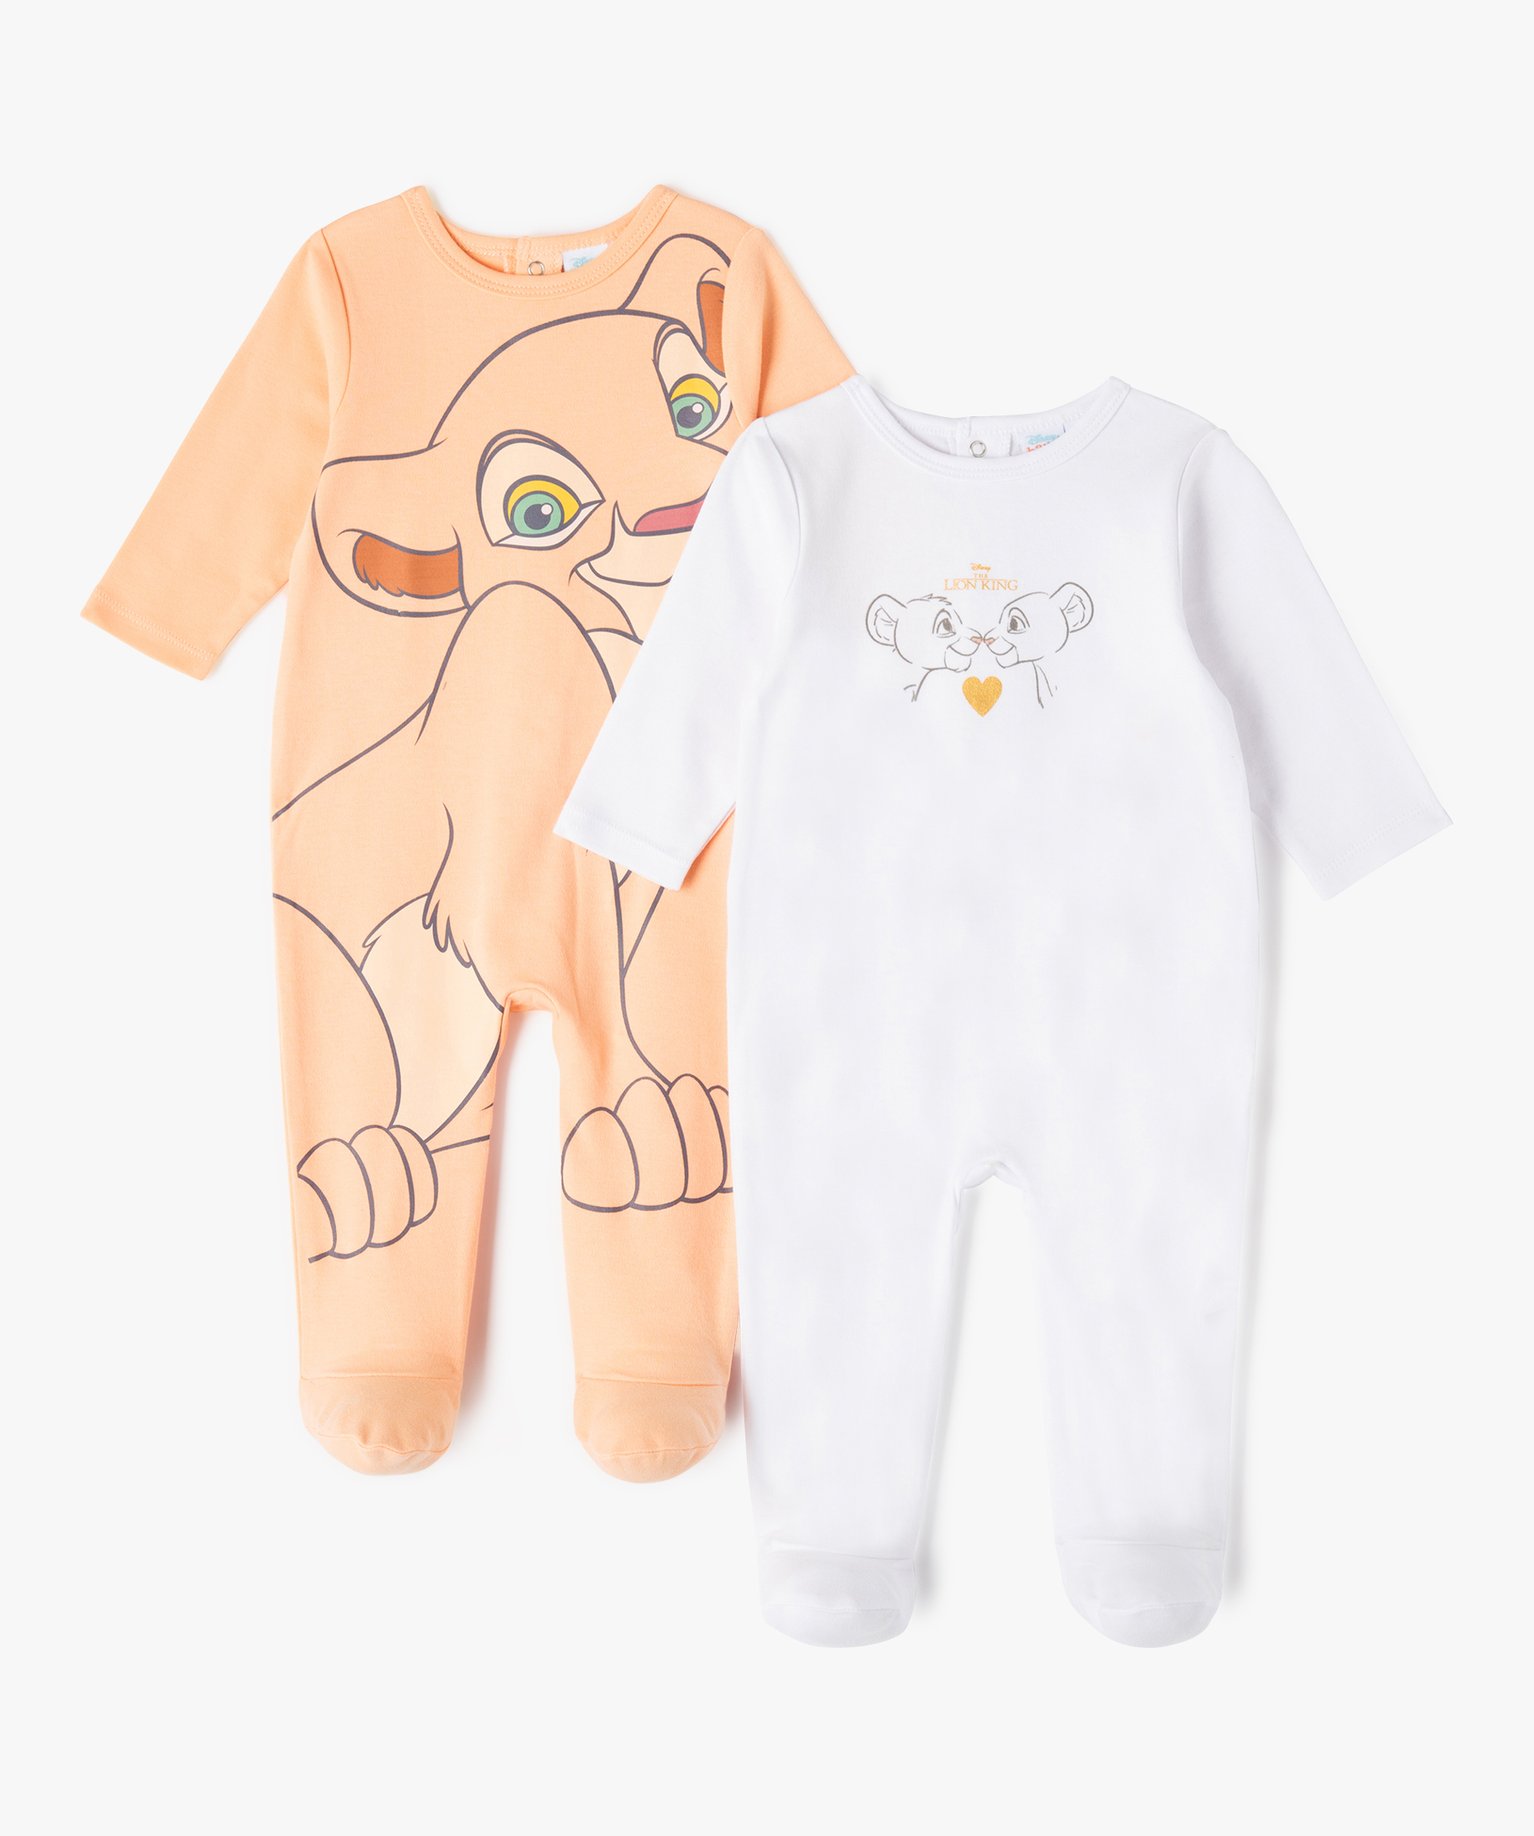 Pyjama dors-bien en jersey imprimé bébé - Disney - 1M - ecru - DISNEY BABY